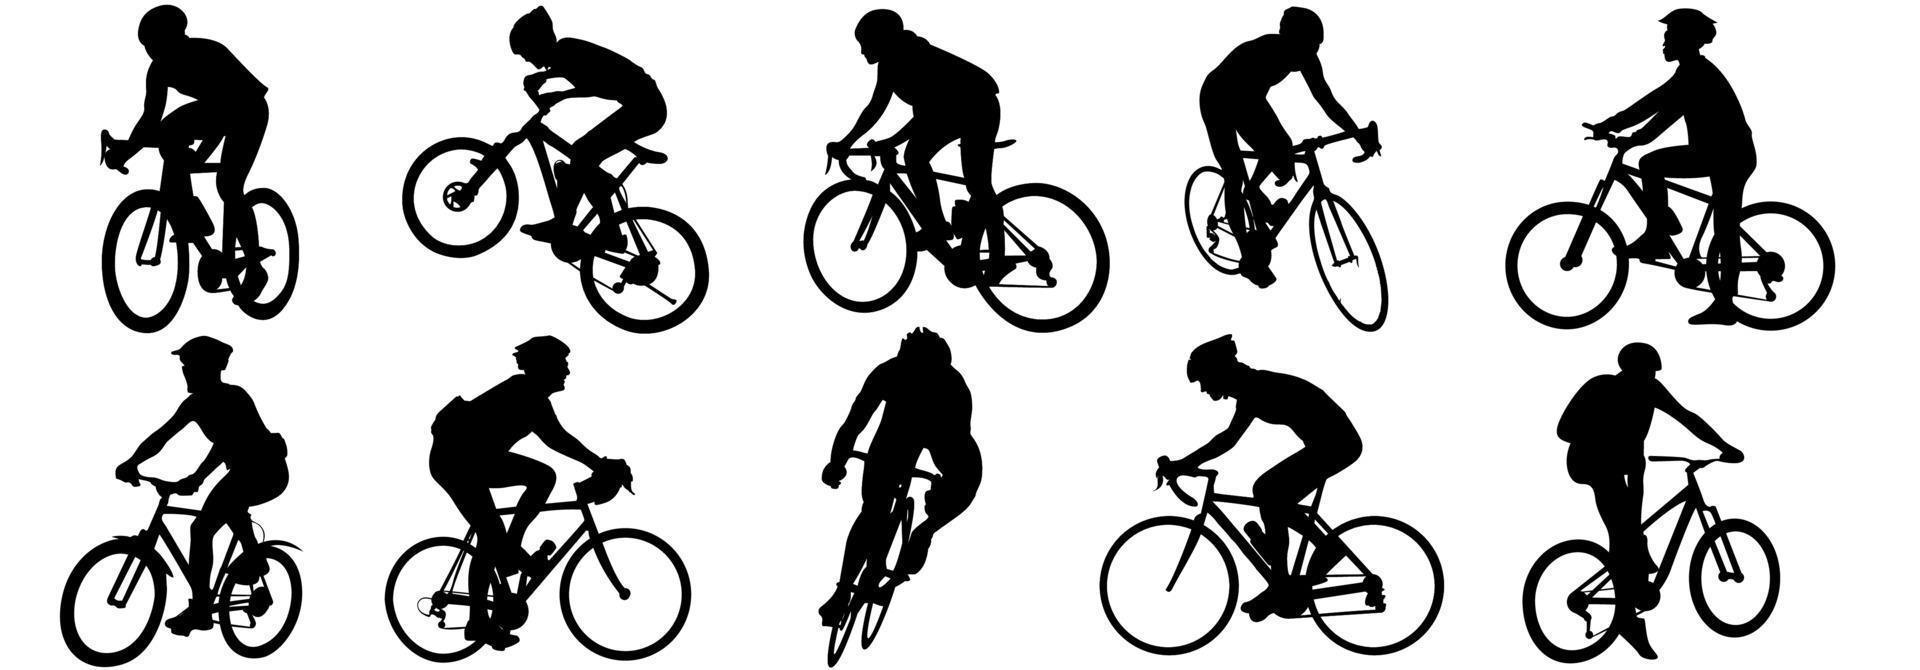 Radfahrer-Vektor-Symbol. Sammlung von Silhouetten von Menschen, die in verschiedenen Positionen radeln. fahrrad, zyklus, radfahrer, fahrt, vektor, fahrrad, mann, symbol, menschen, abbildung, frau, mädchen, junge, berg vektor